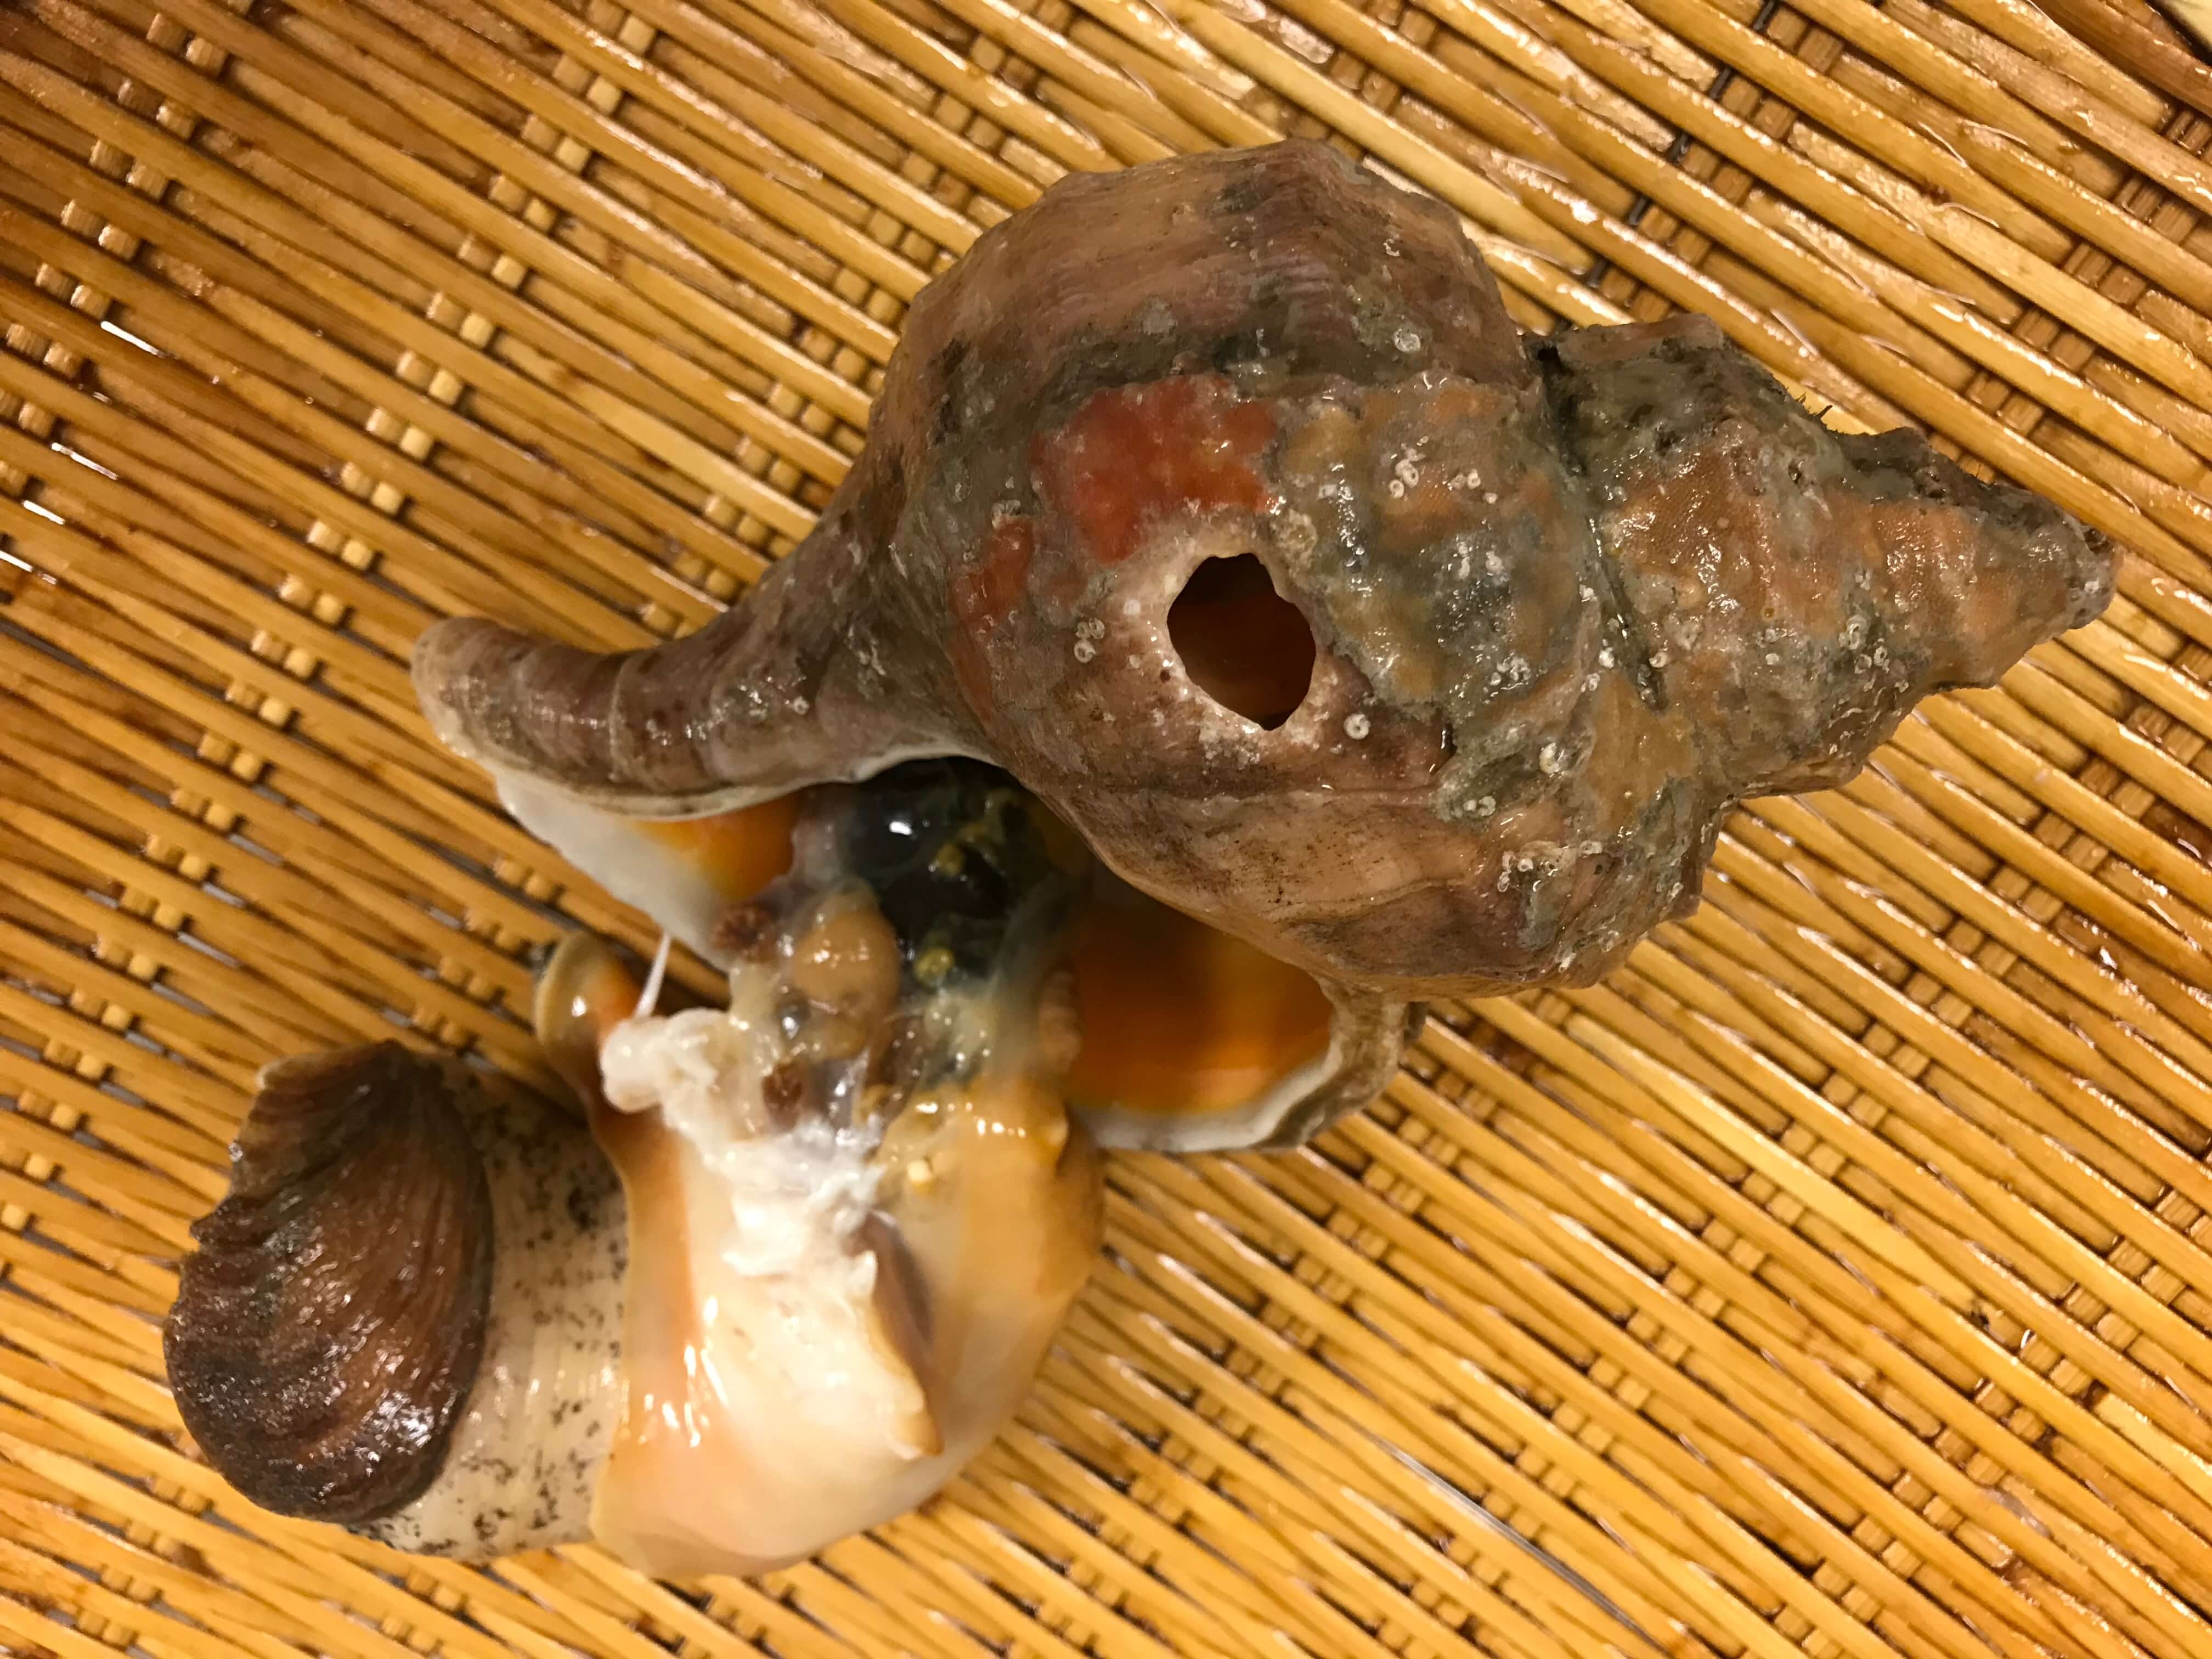 銀座渡利 ツブ貝の捌き方 殻を割らずに剥く方法 銀座渡利 Ginza Watari